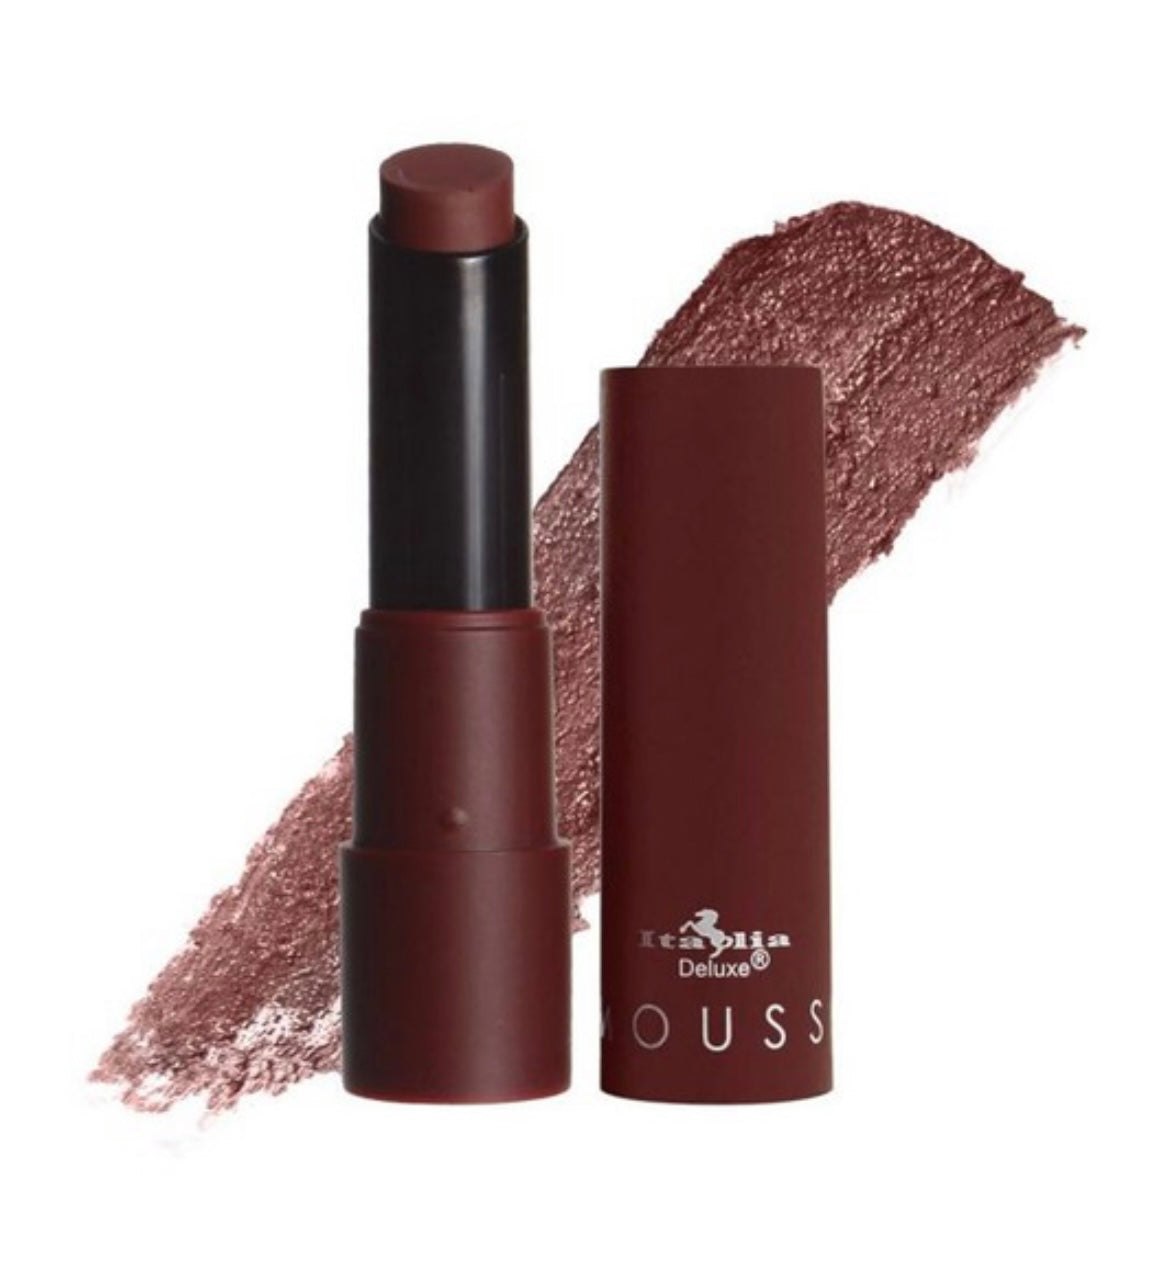 Browns matte lipstick set